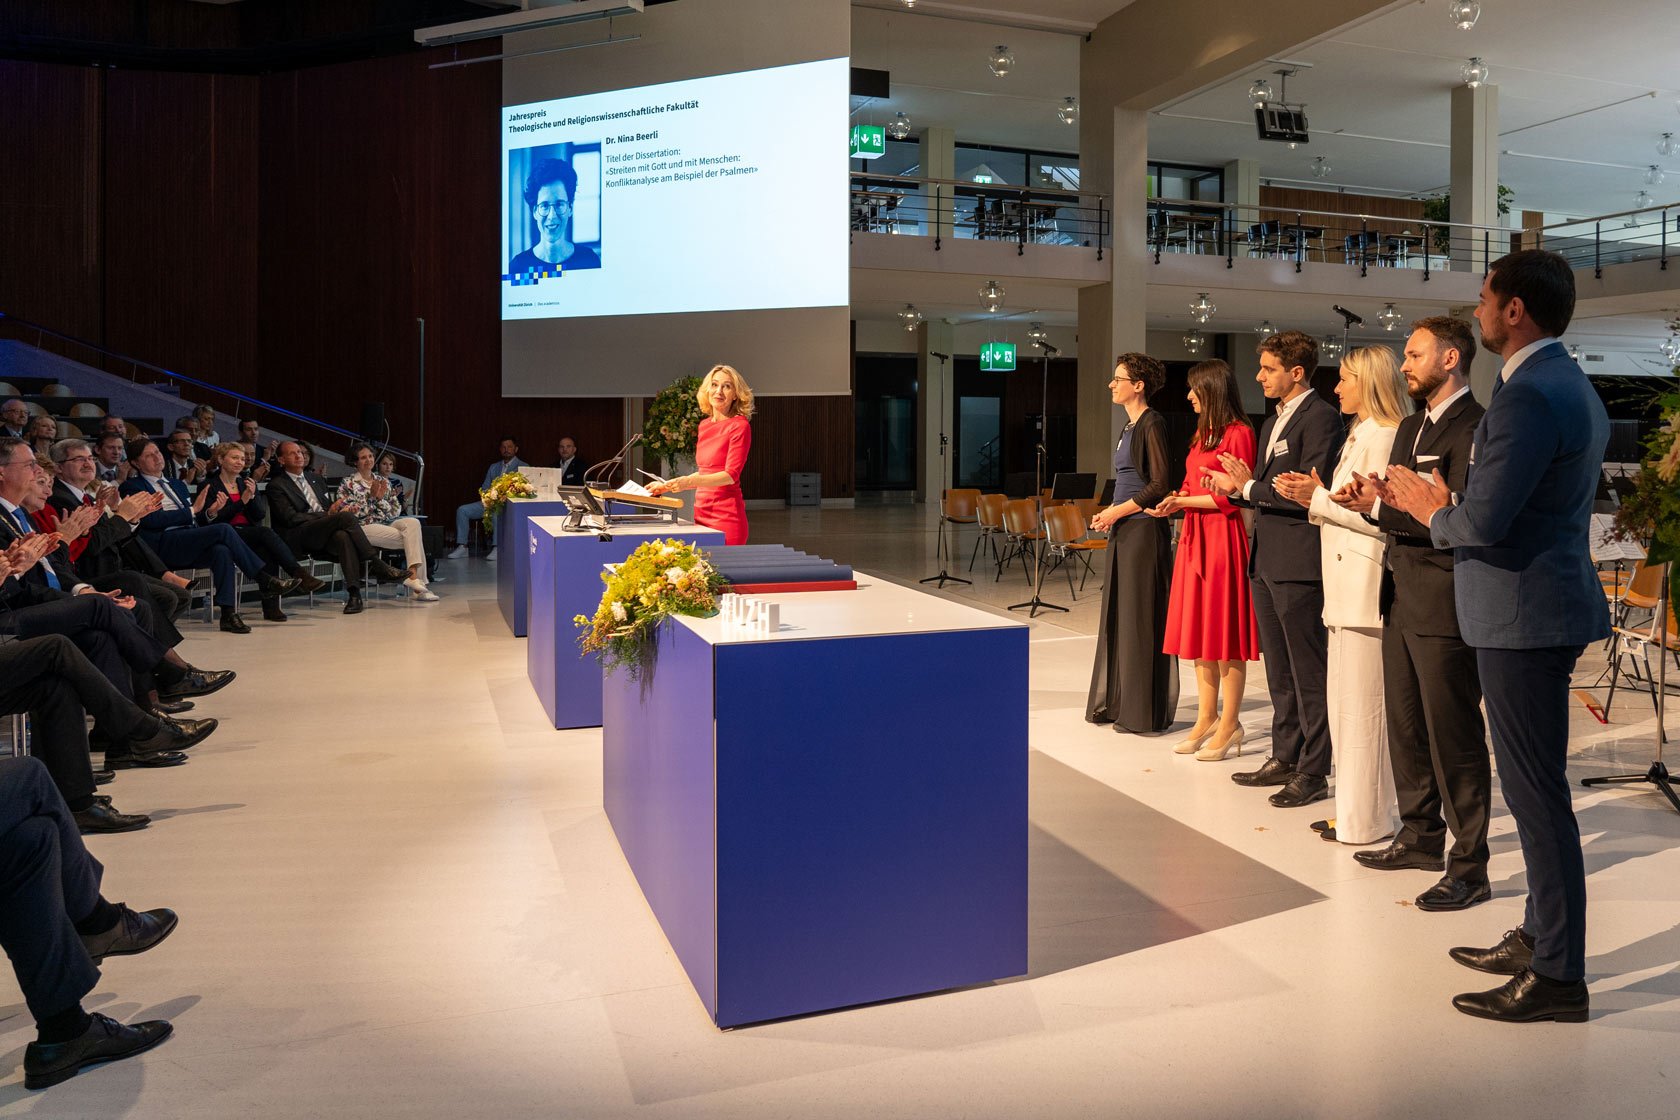 Elisabeth Stark, Prorektorin Forschung, ehrte die Jahrespreisträger:innen der Fakultäten für ihre ausgezeichneten wissenschaftlichen Arbeiten.